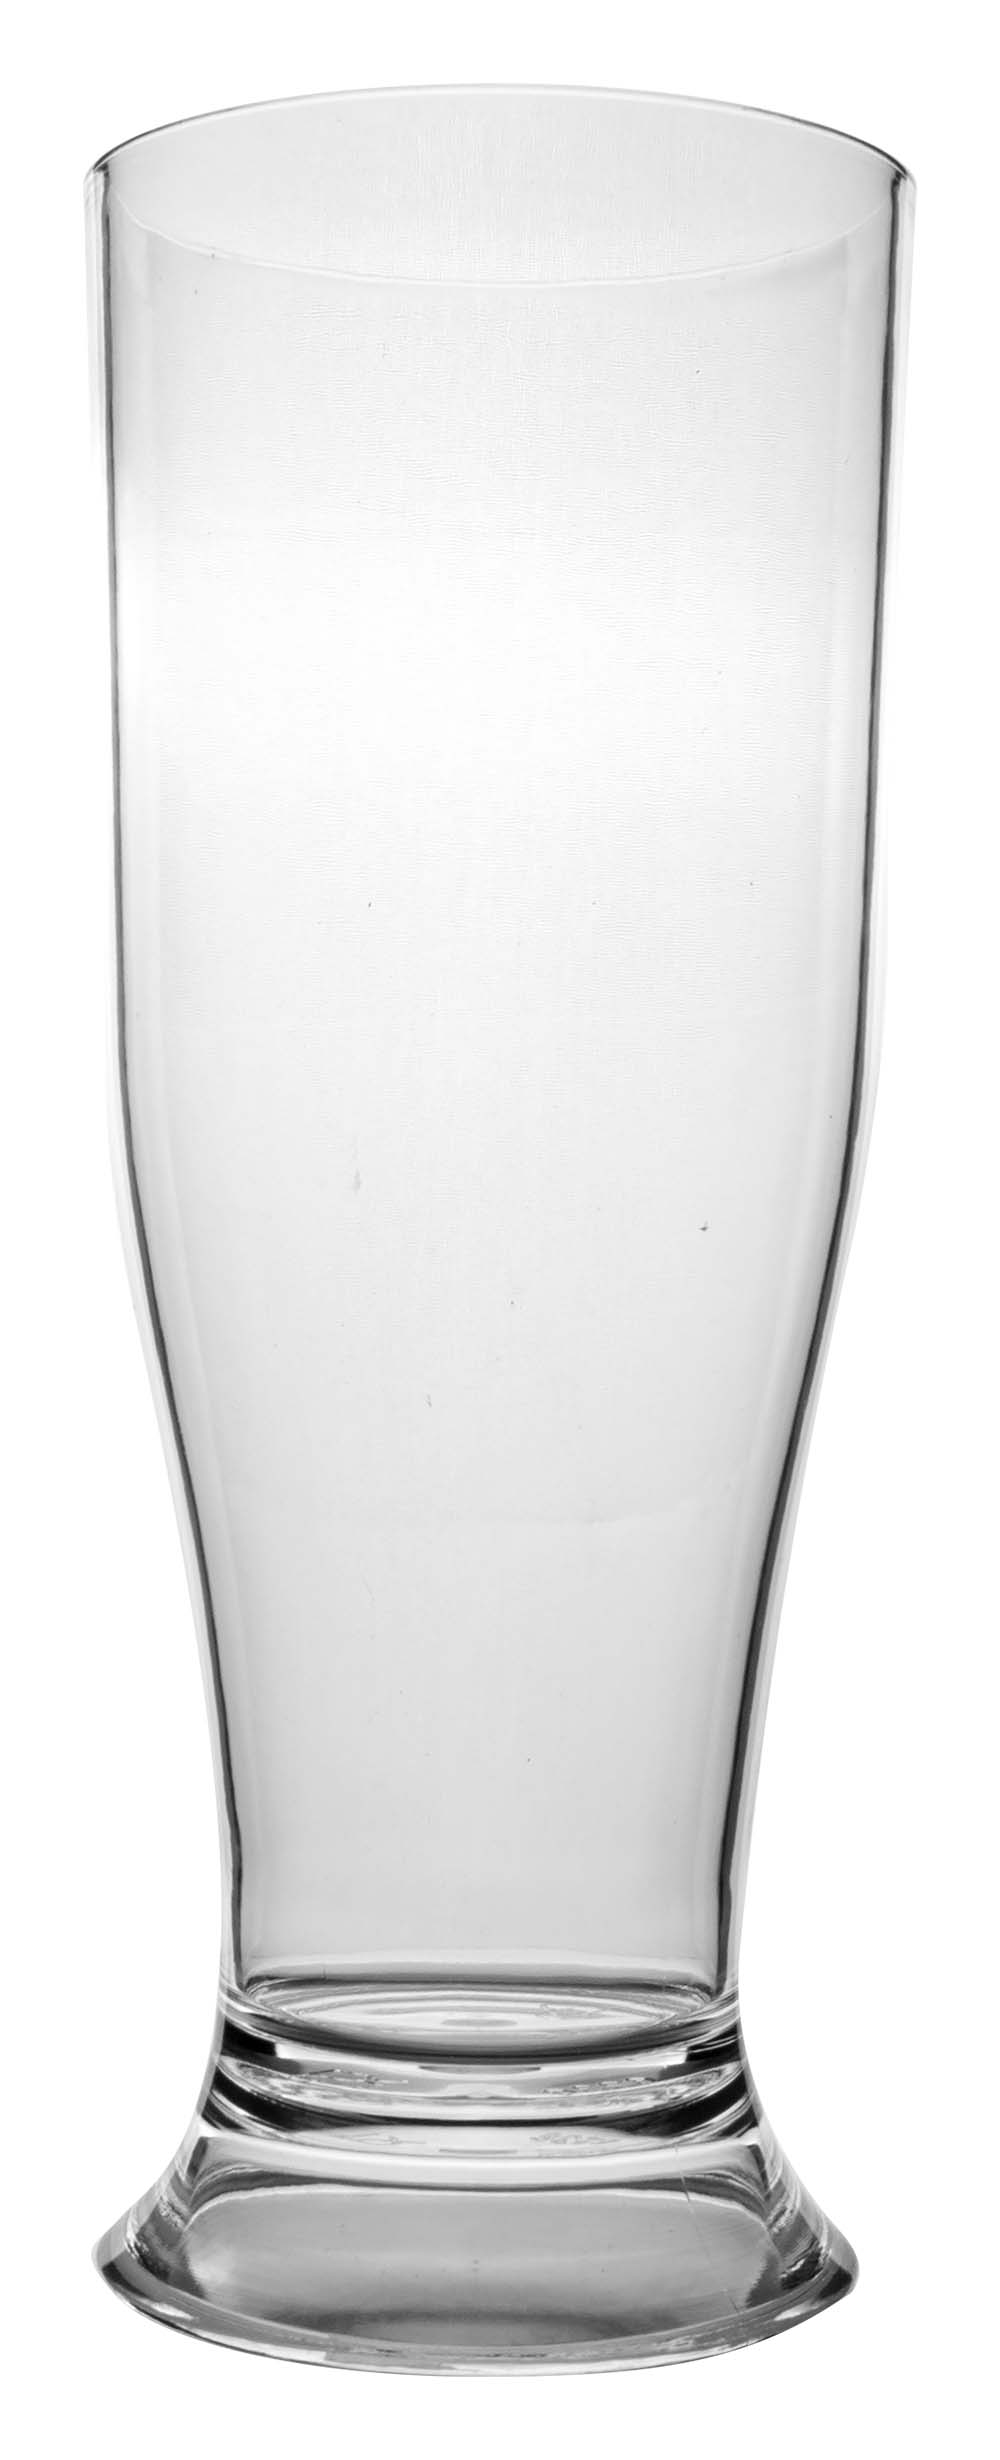 6101494 Een extra stevig bierglas. Gemaakt van 100% polycarbonaat. Hierdoor is het glas vrijwel onbreekbaar, lichtgewicht en kraswerend. Ook is dit glas vaatwasmachinebestendig.